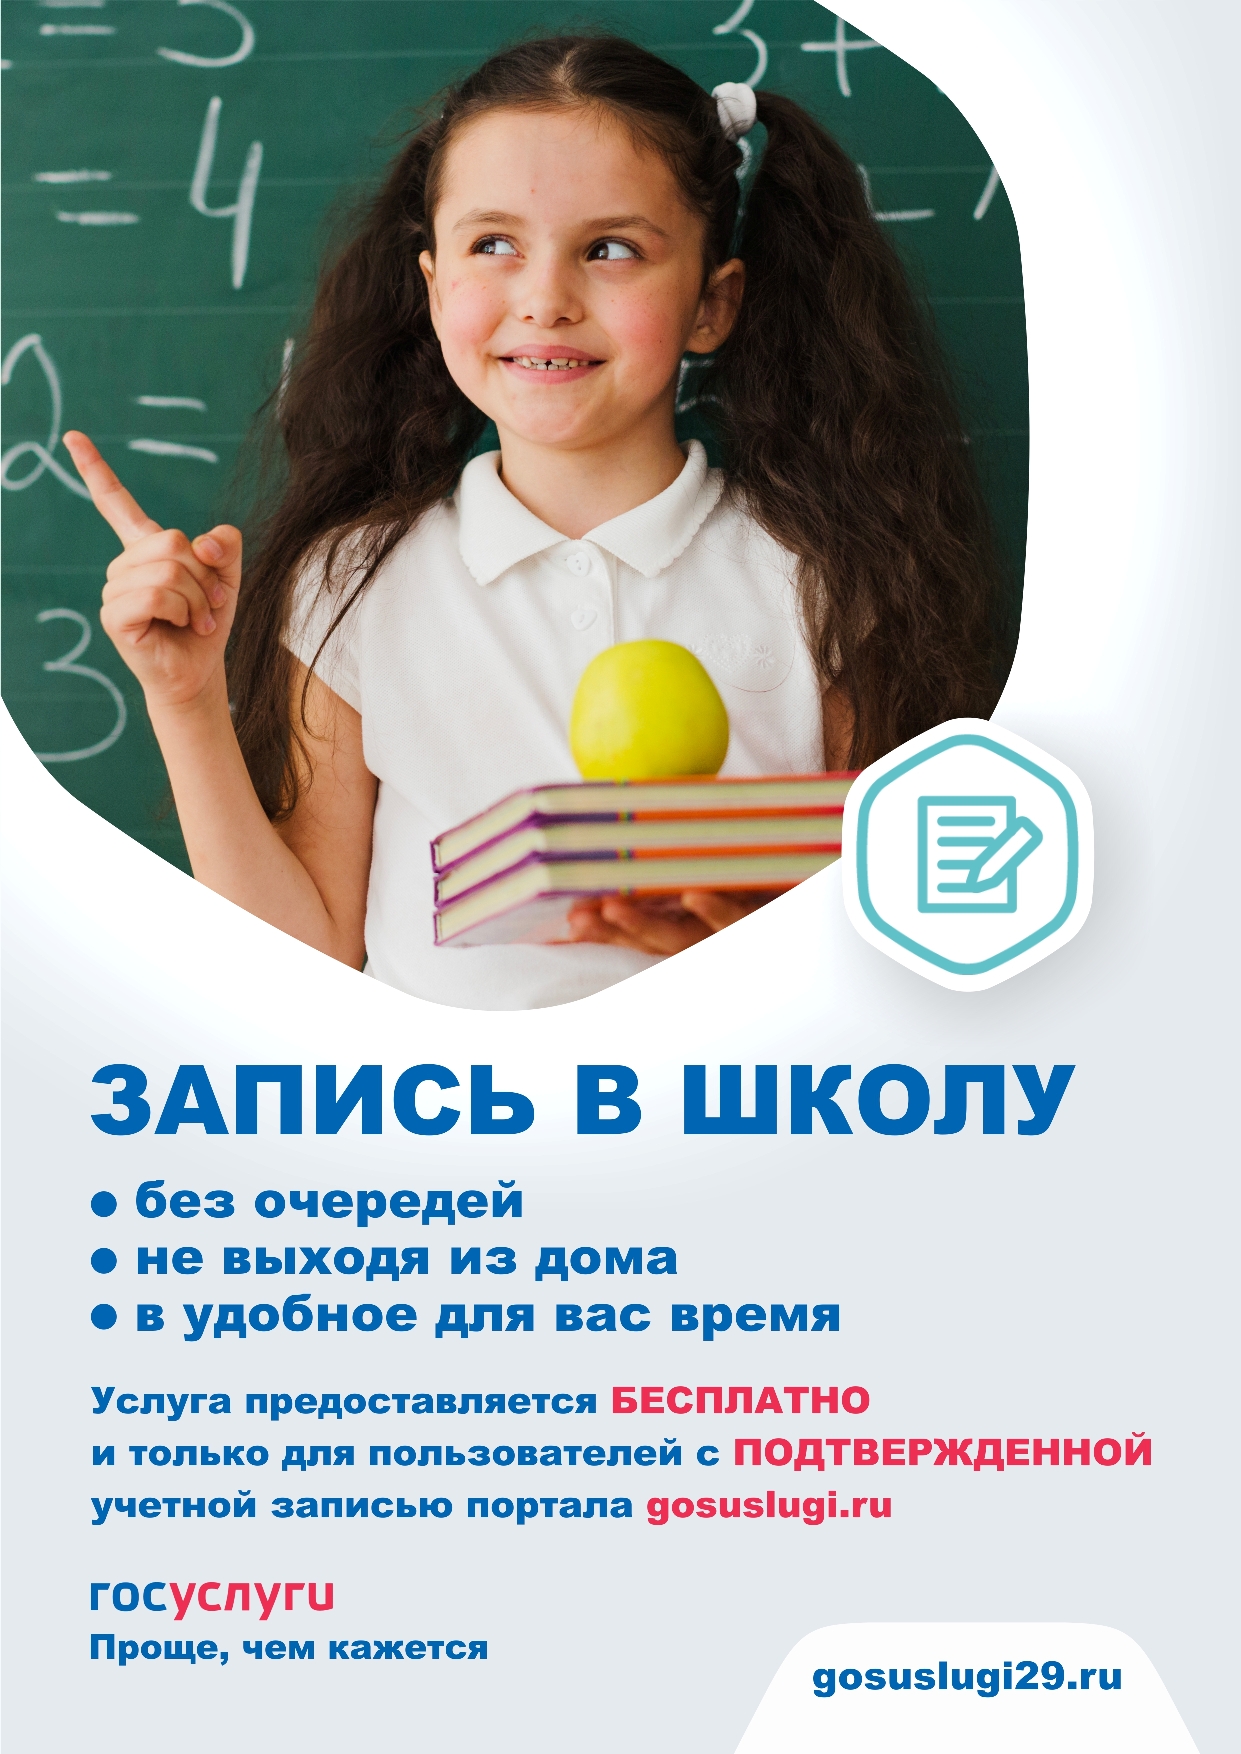 Запись в школу через портал gosuslugi.ru